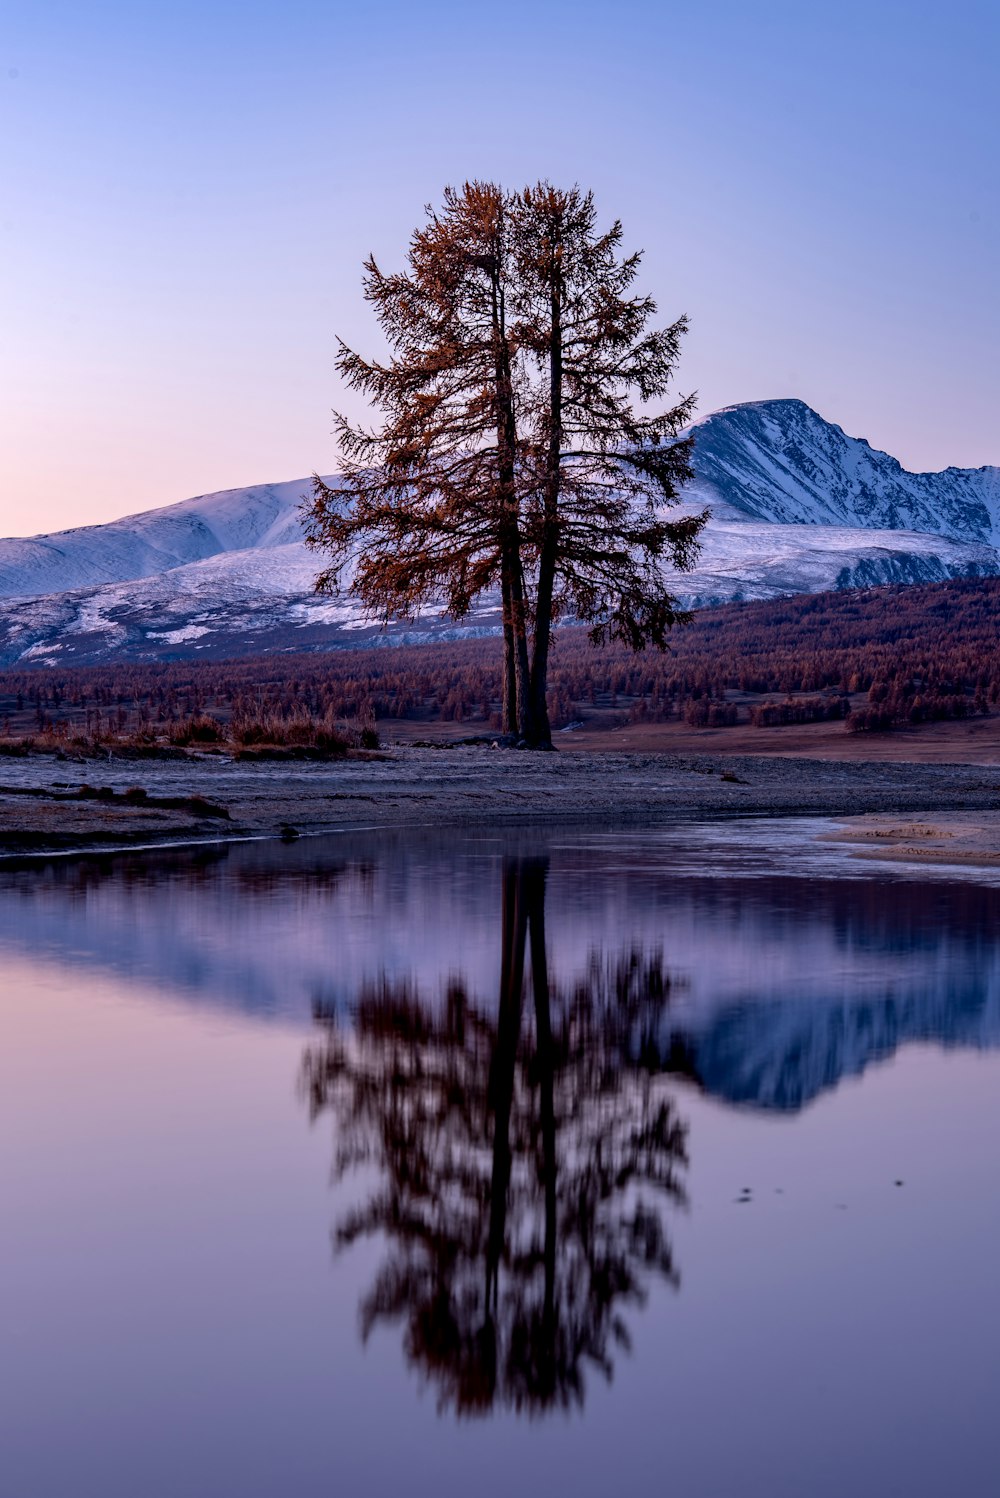 Un arbre solitaire se reflète dans l’eau calme d’un lac